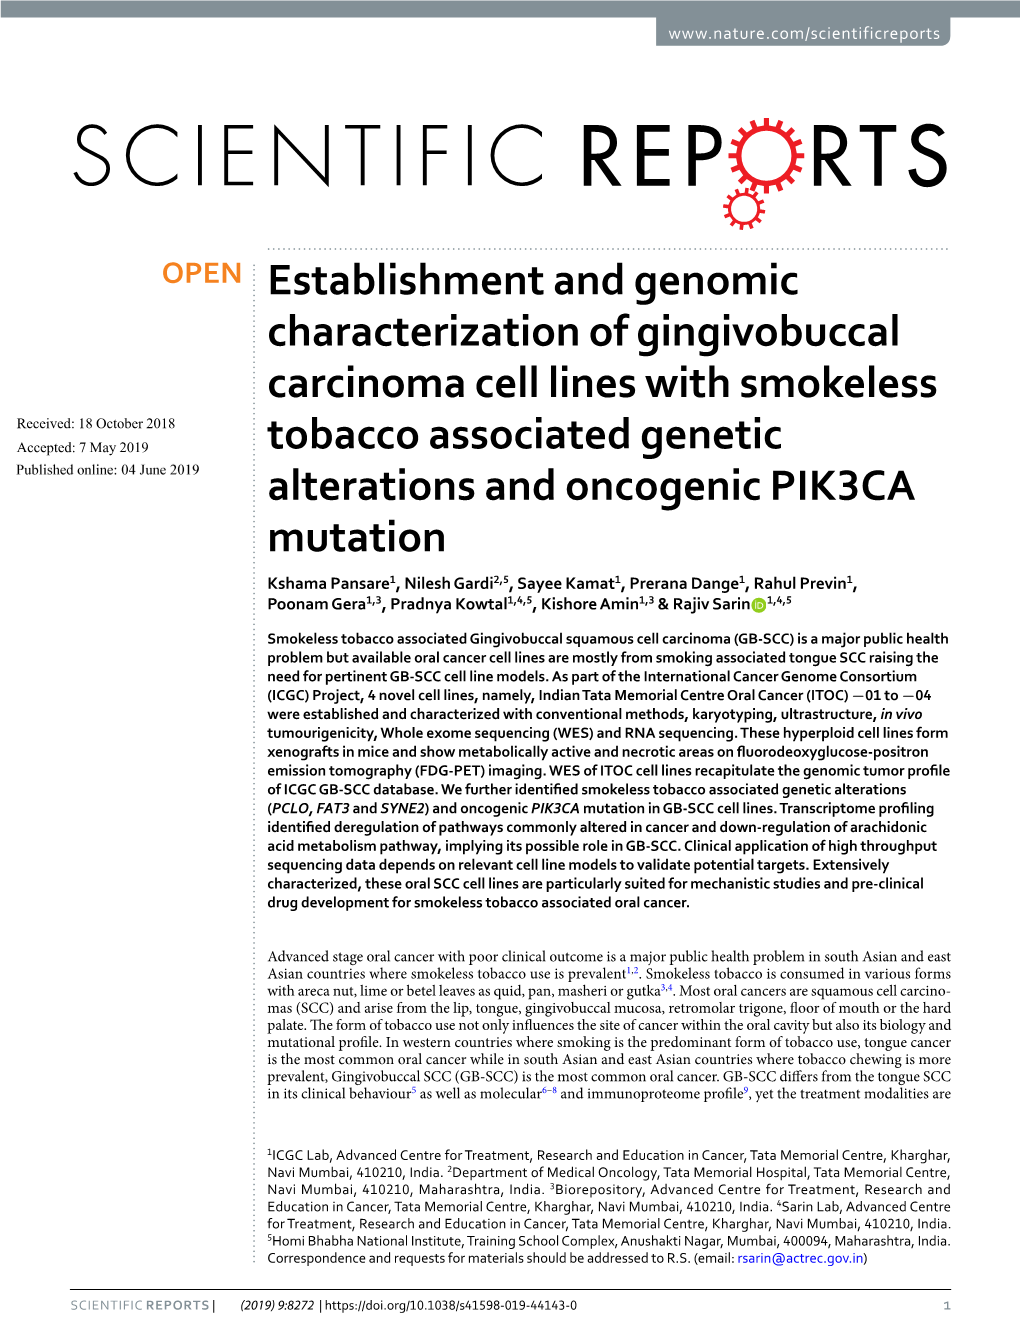 Establishment and Genomic Characterization of Gingivobuccal